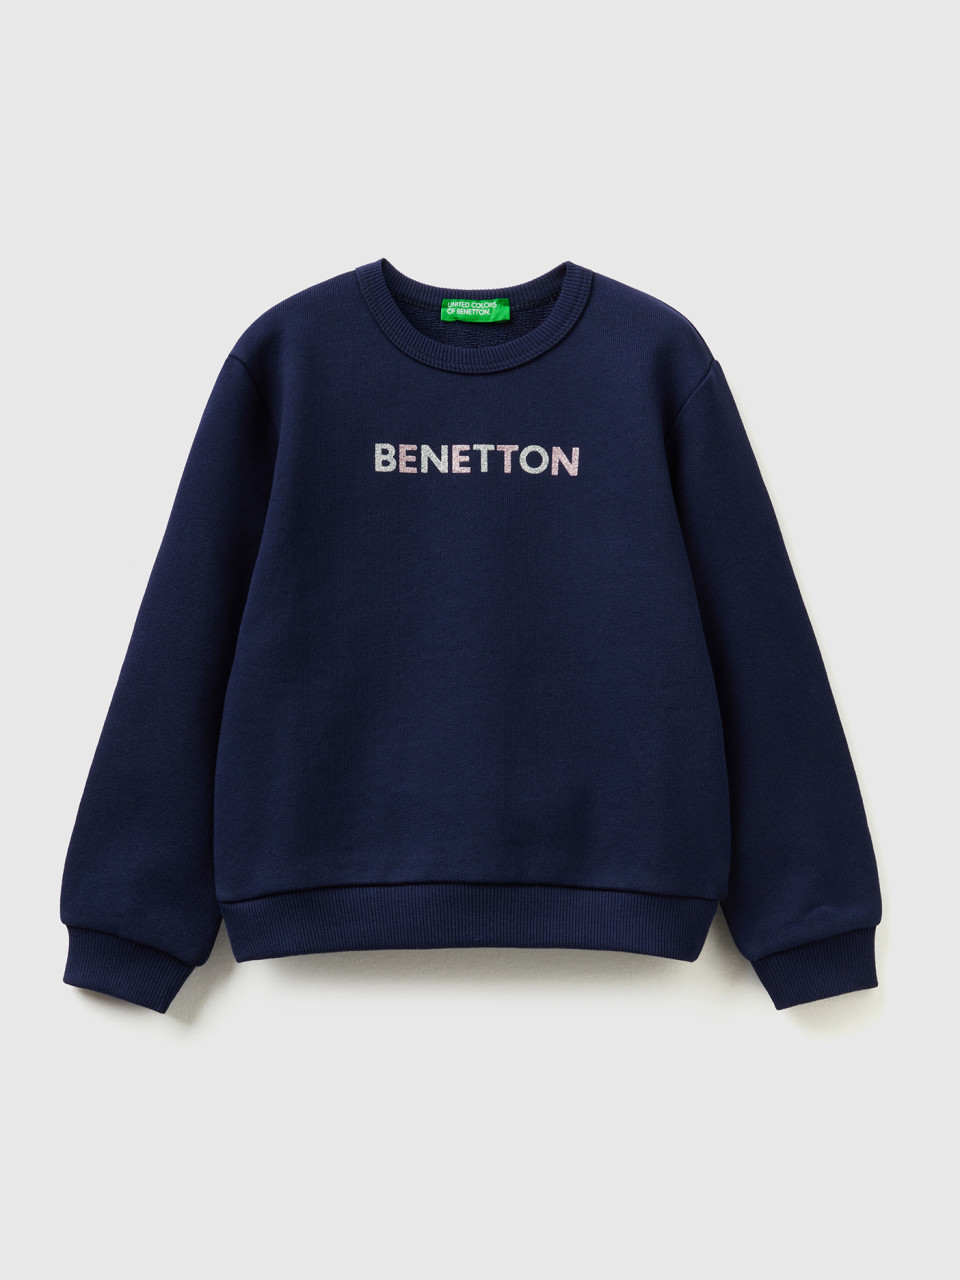 Benetton, Dunkelblauer Sweater Aus Bio-baumwolle Mit Glitter-print, Dunkelblau, female